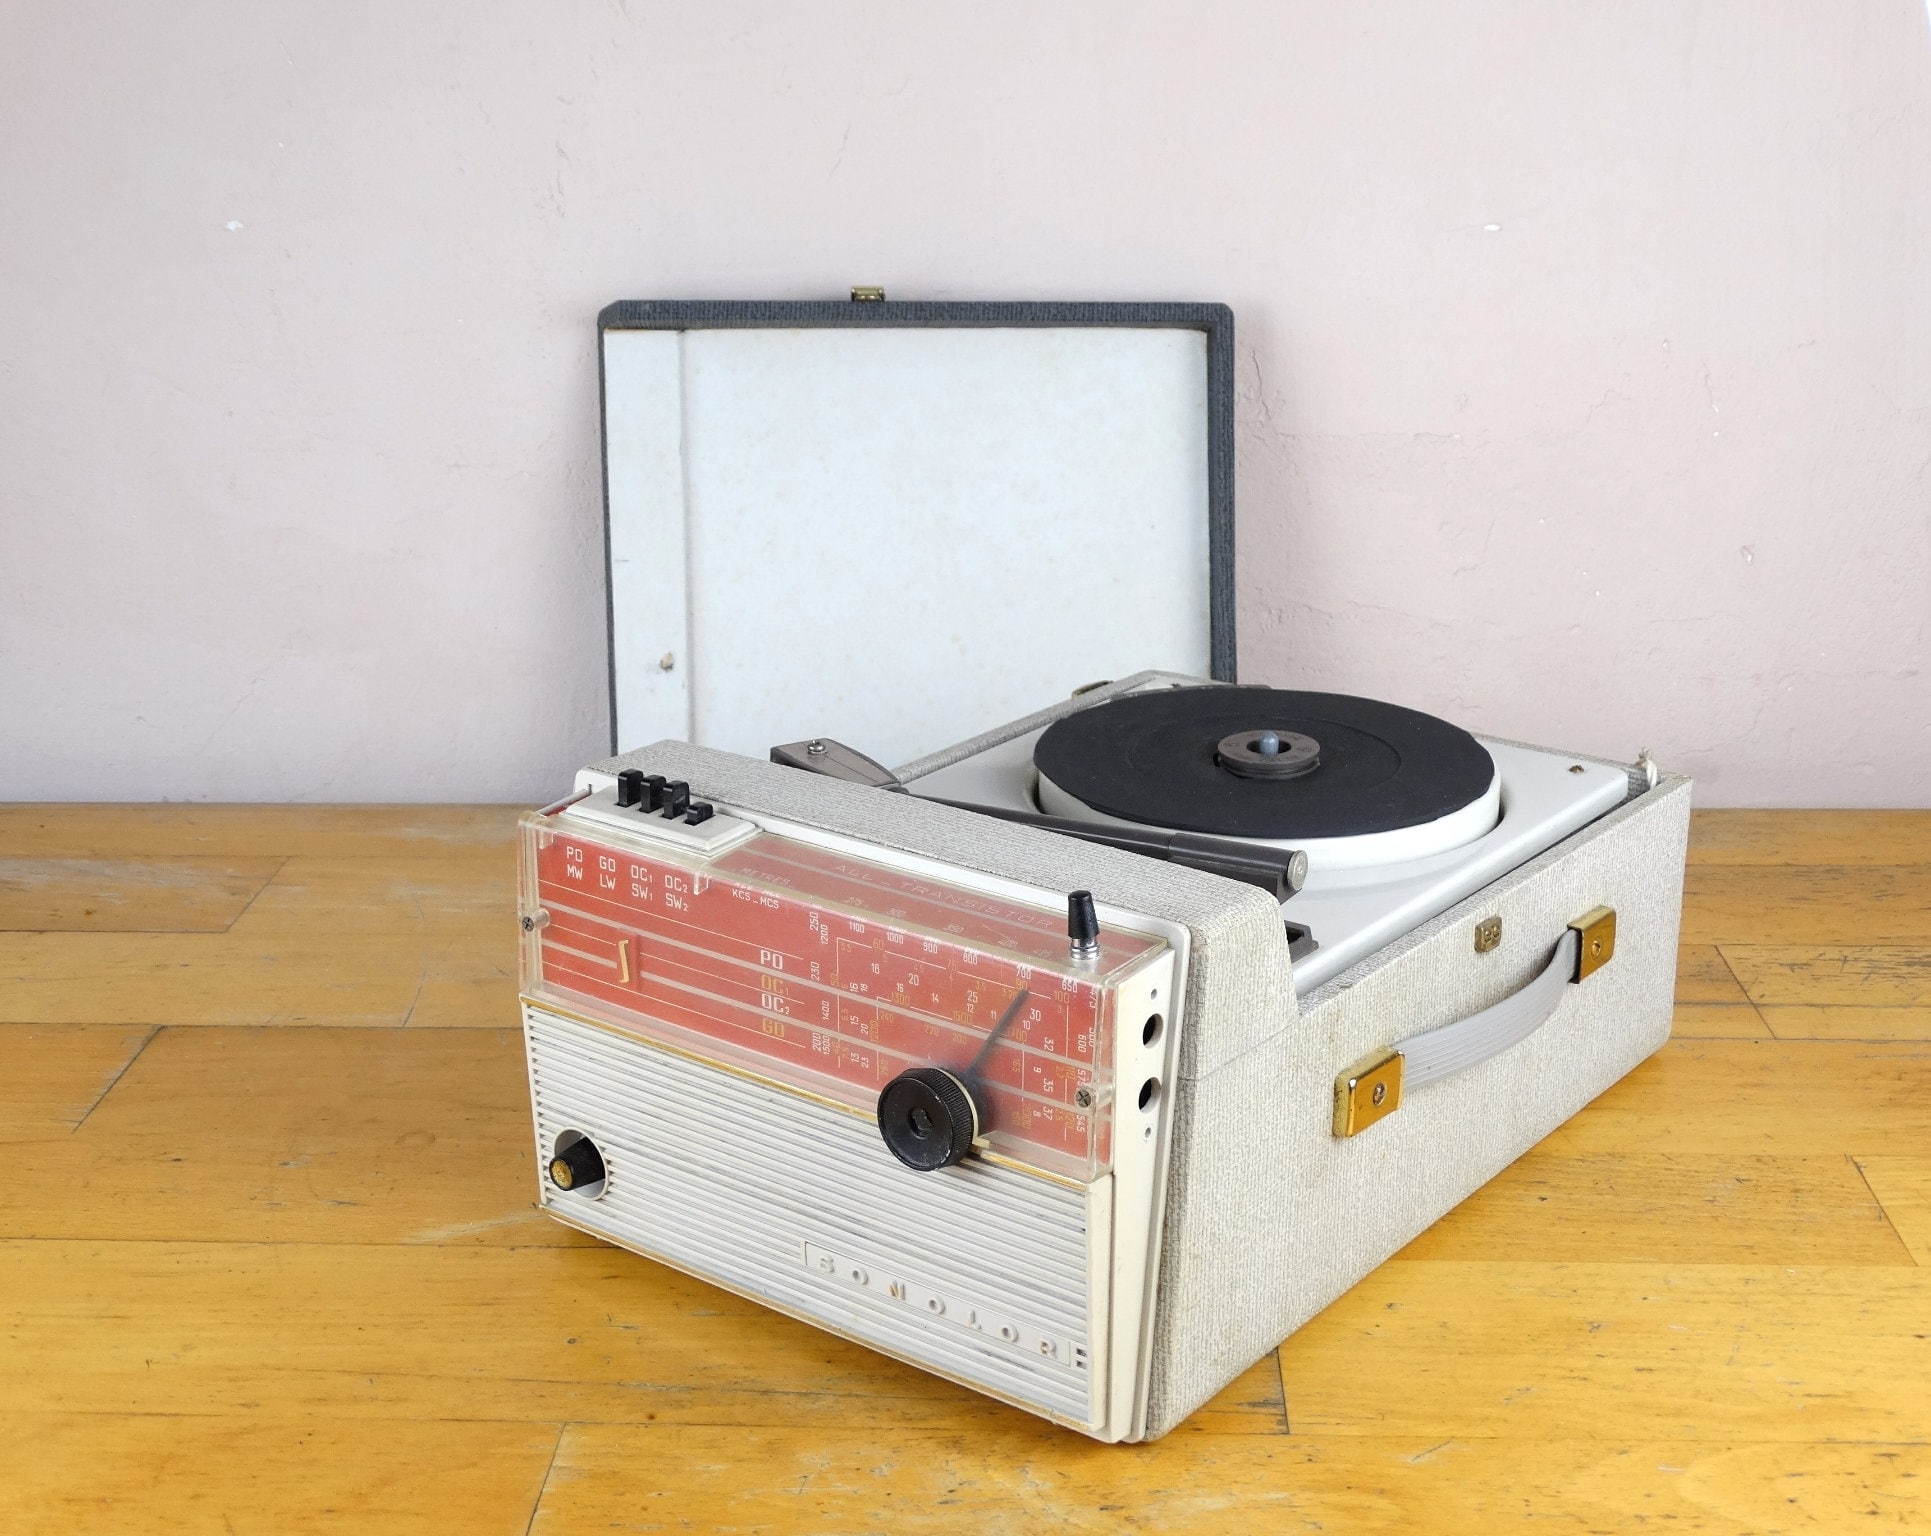 Tocadiscos vintage Solo, tocadiscos rojo retro fabricado en Alemania -   México